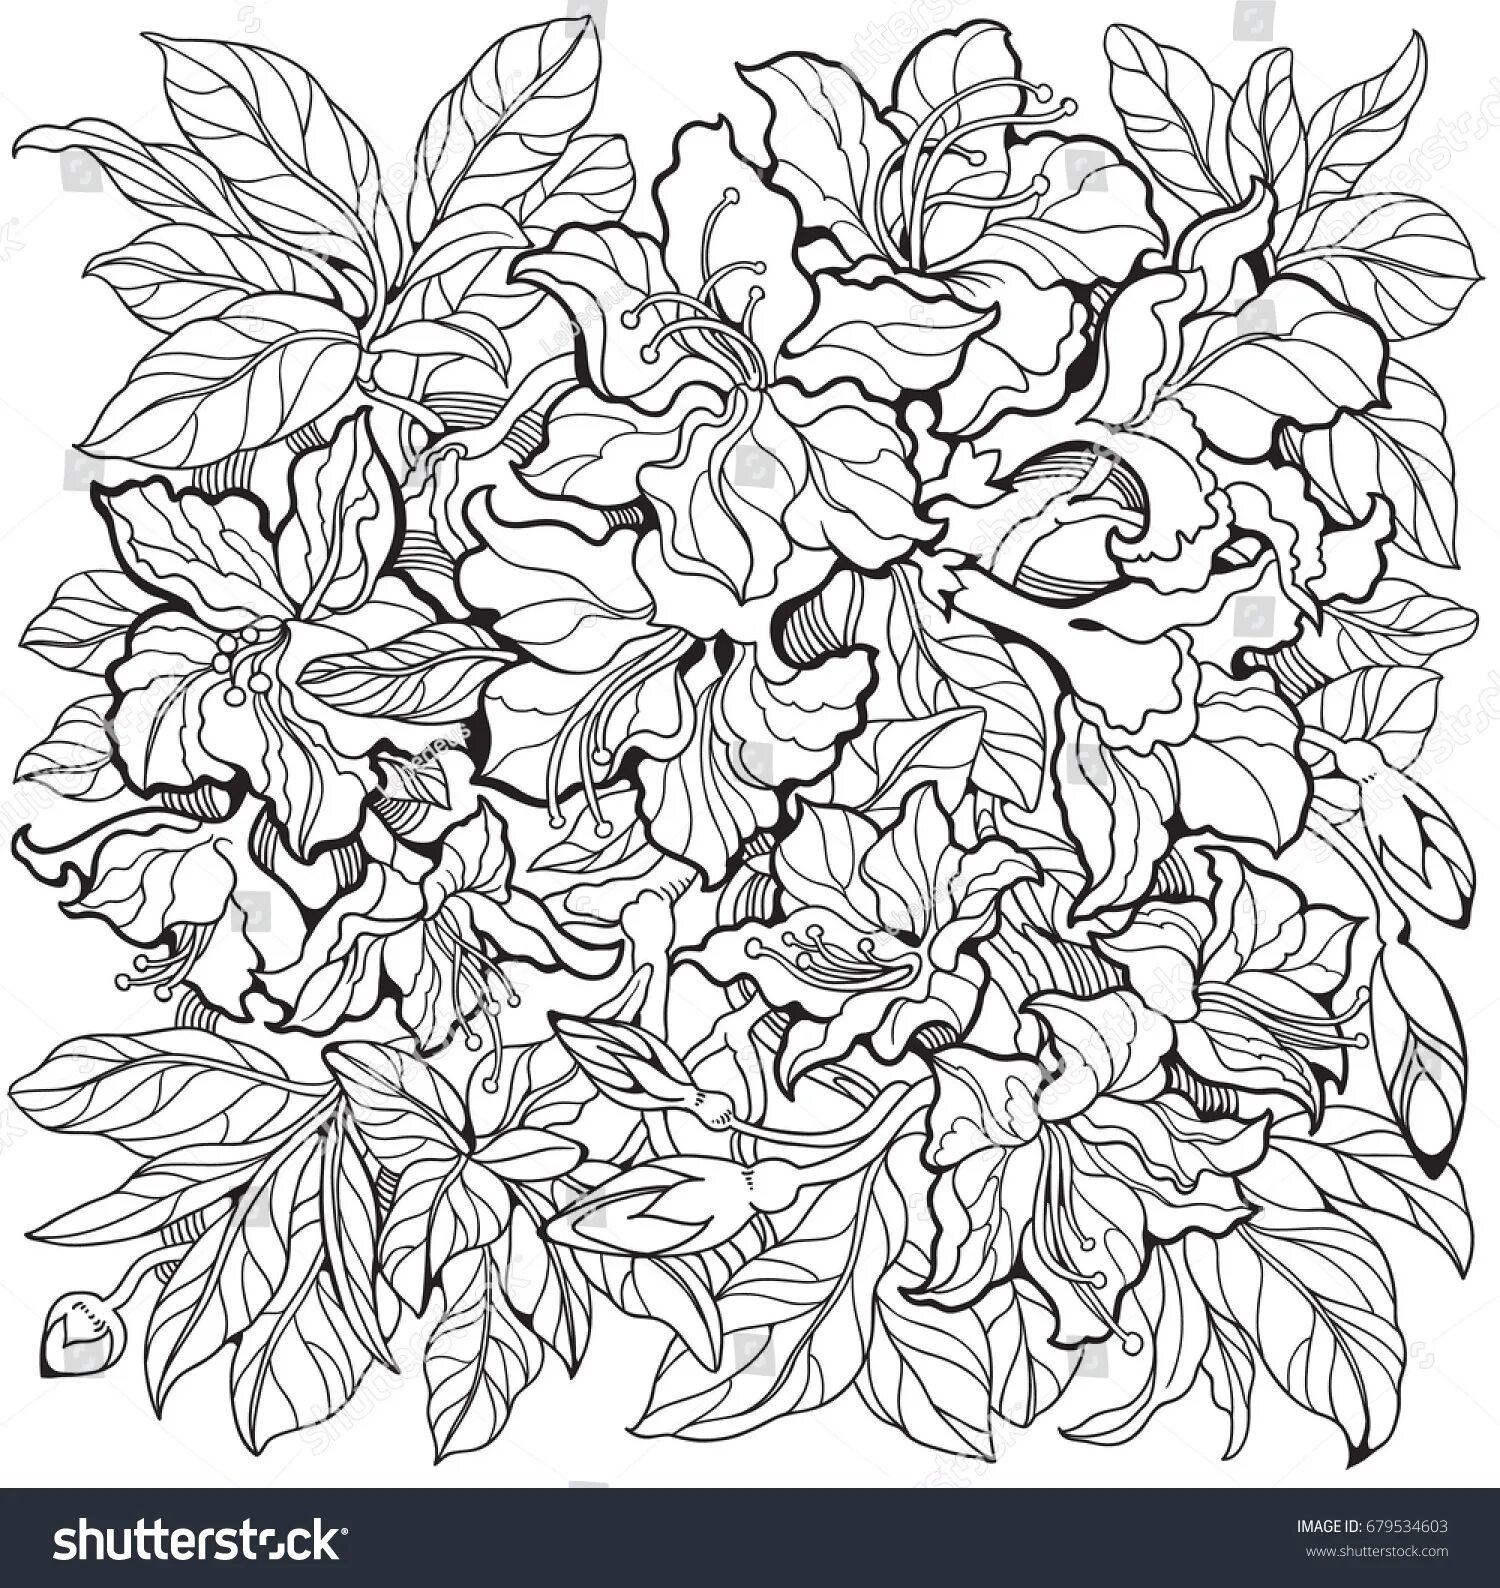 Attractive azalea coloring page